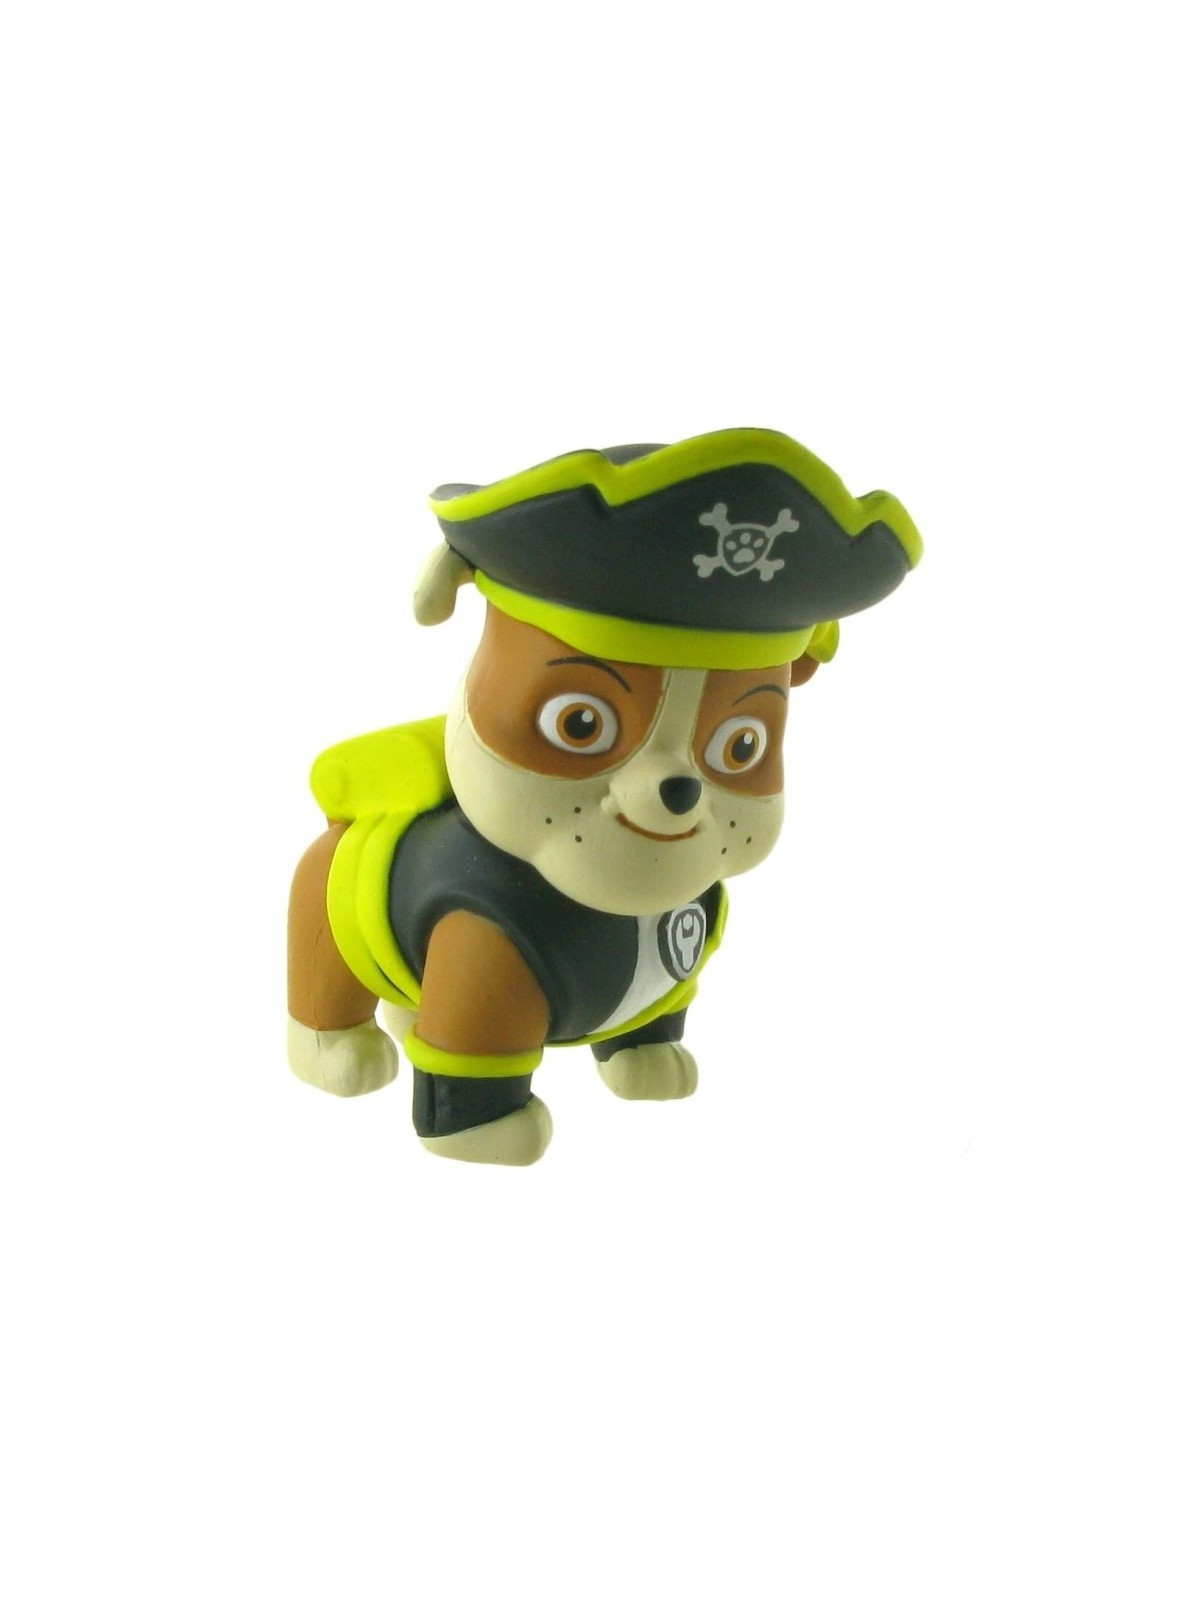 Dekorační figurka  Paw Patrol - Rubble  pirát